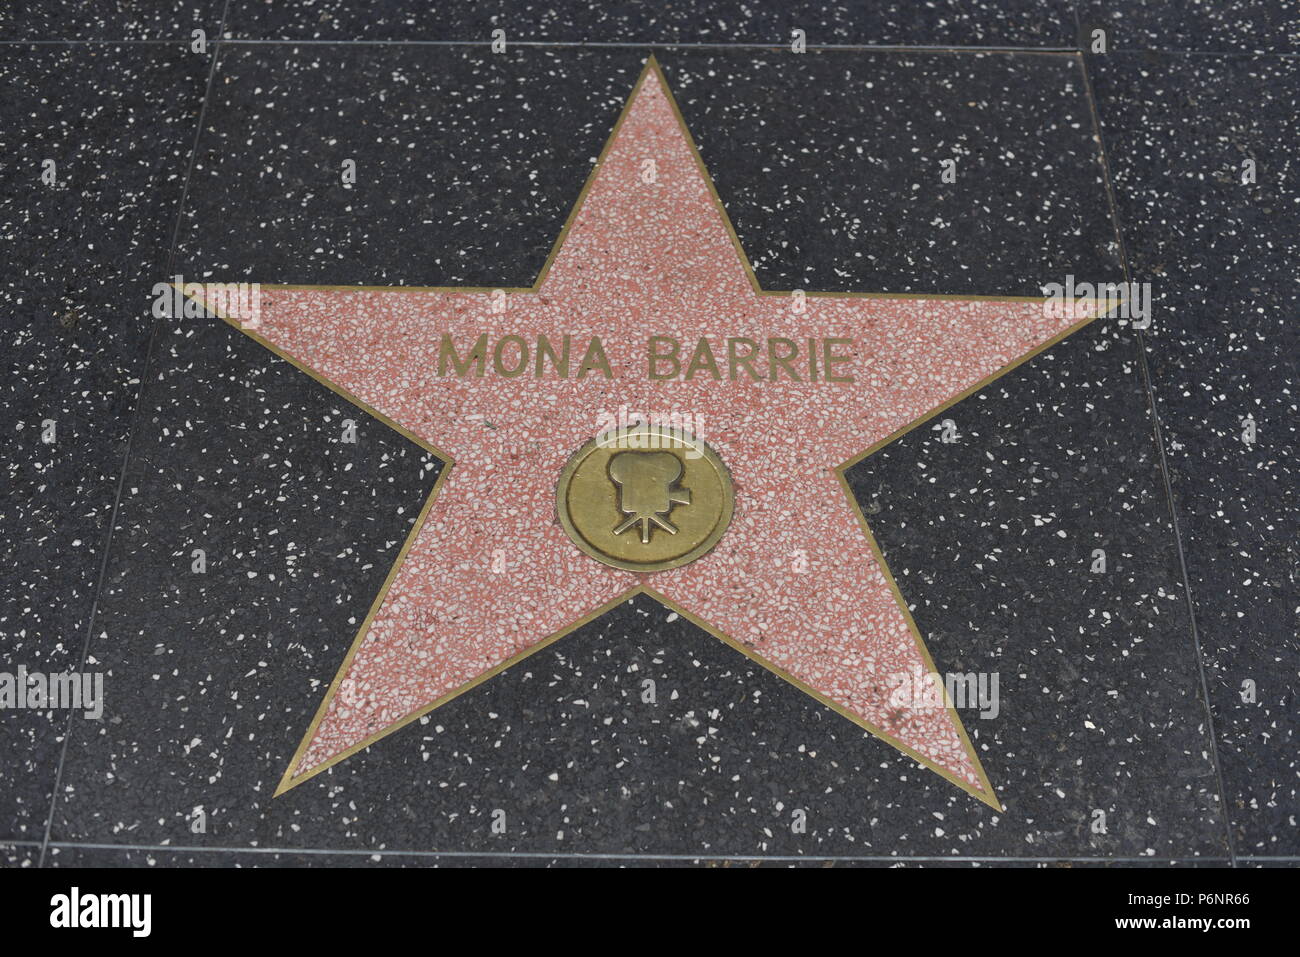 HOLLYWOOD, CA - 29 Giugno: Mona Barrie stella sulla Hollywood Walk of Fame in Hollywood, la California il 29 giugno 2018. Foto Stock